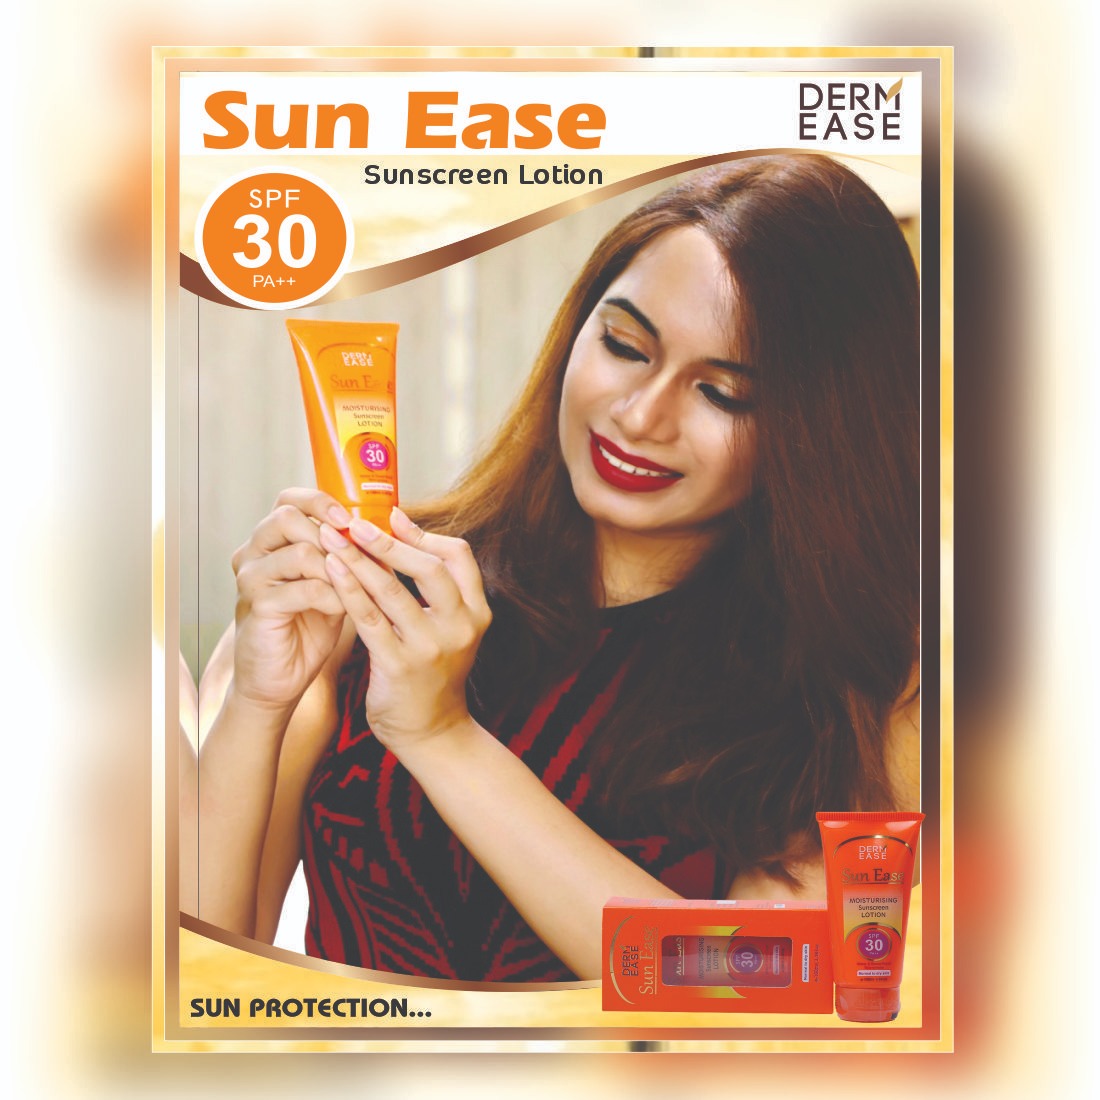 DERM EASE Sun Ease Sunscreen Body Lotion